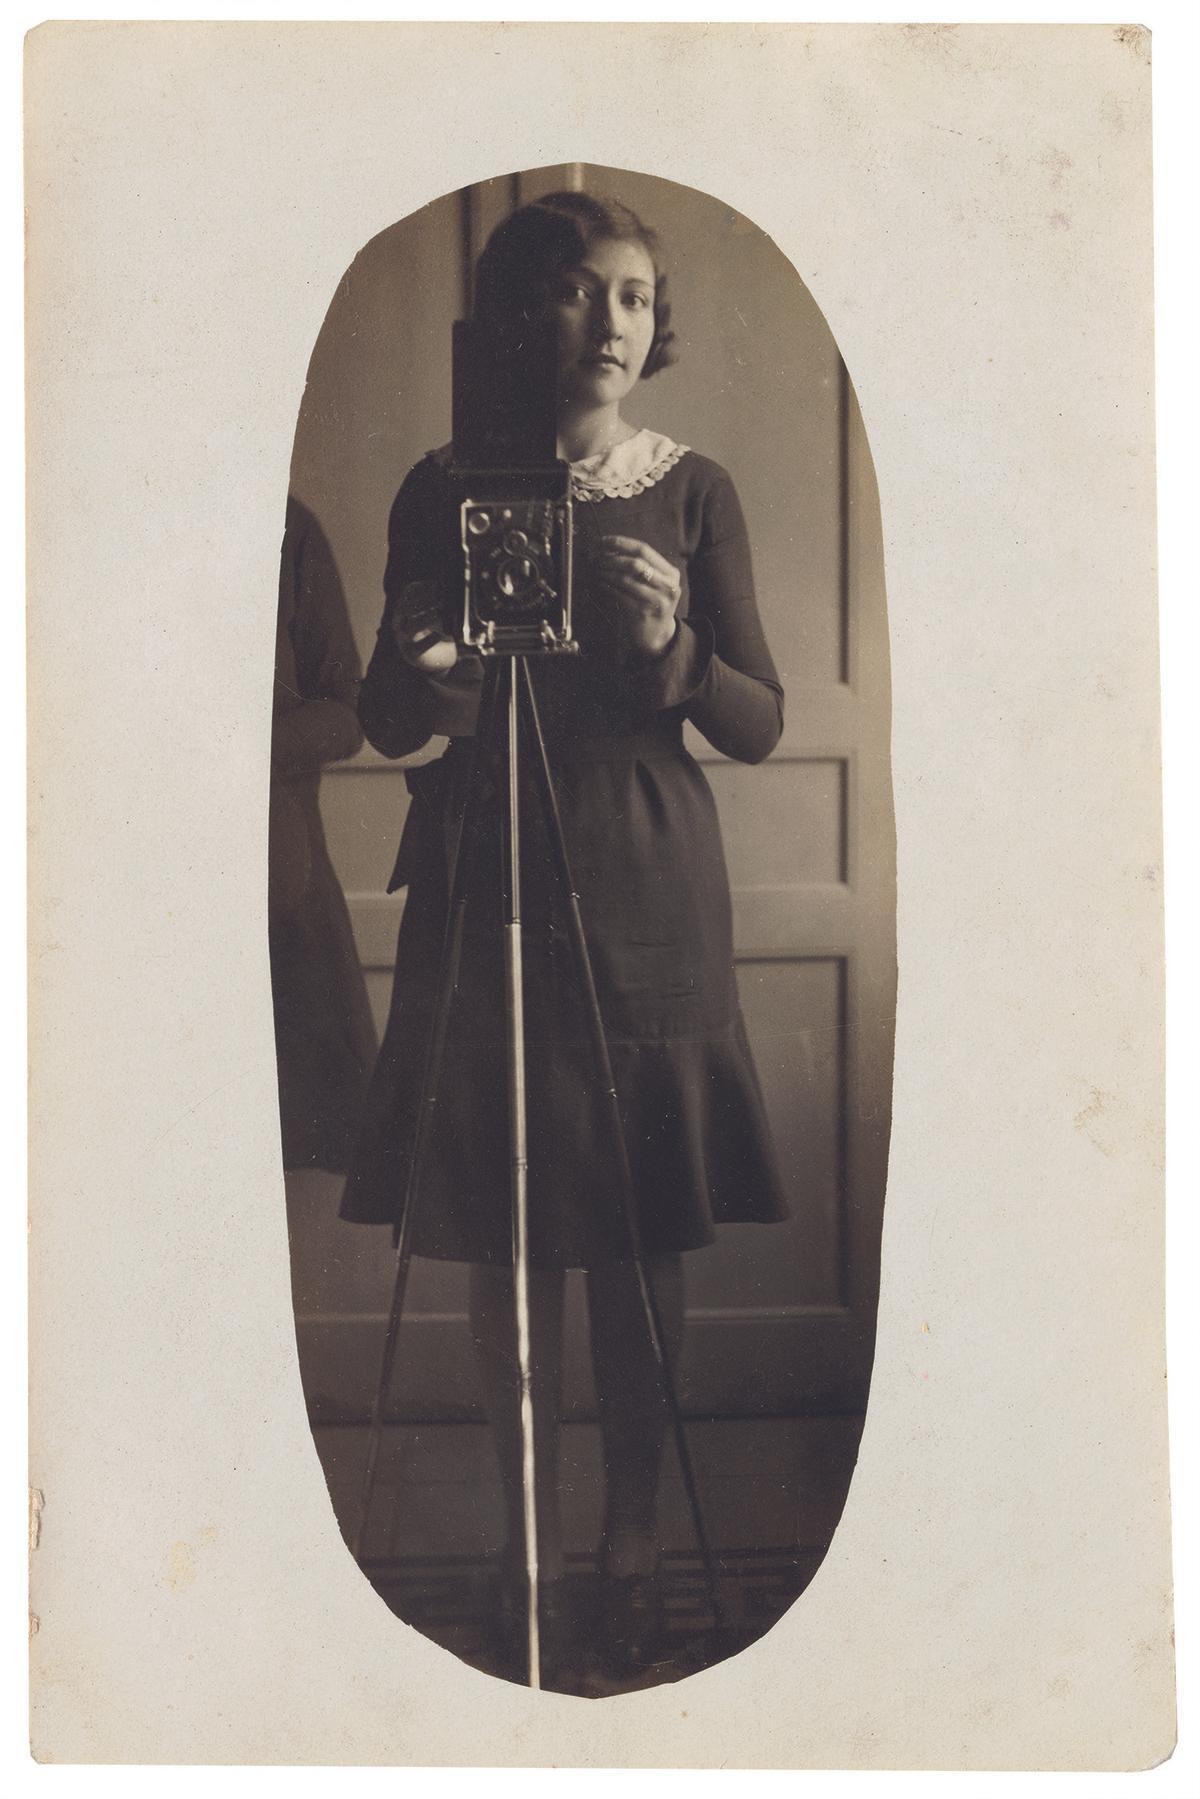 Autoretrat d’una noia amb càmera i trípode davant d’un mirall, c. 1929-1935